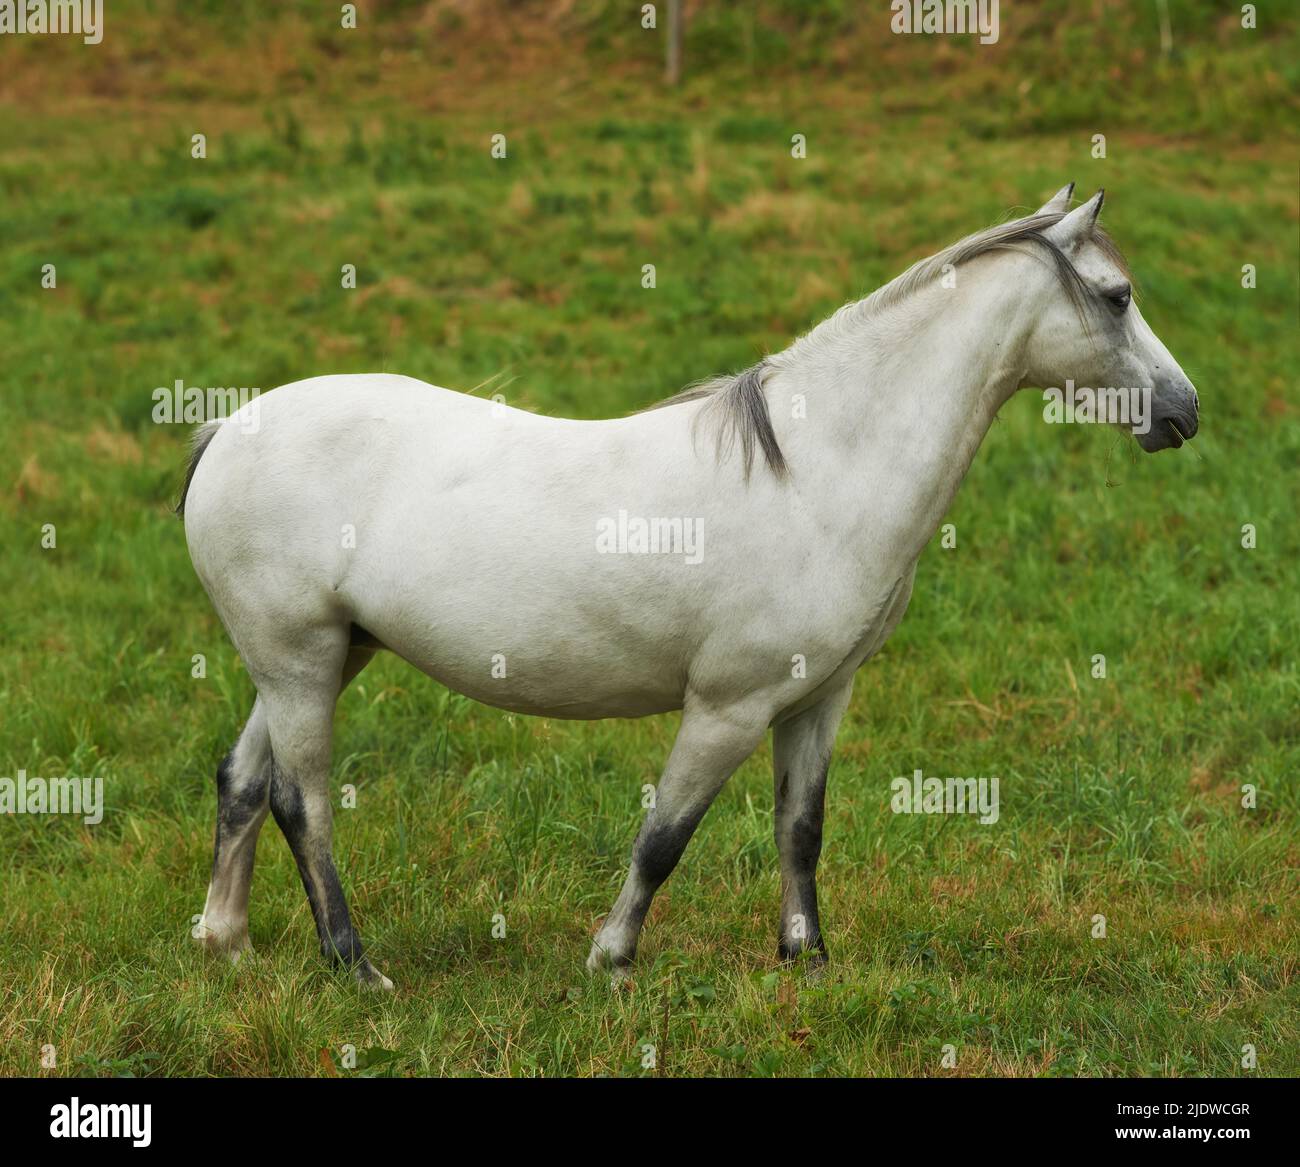 Ein weißes Pferd, das auf einer grünen Weide grast. Heimisches Nutztier oder Pony auf einem landwirtschaftlichen Feld mit frischem Gras. Ein Hengst oder eine Stute mit Stockfoto